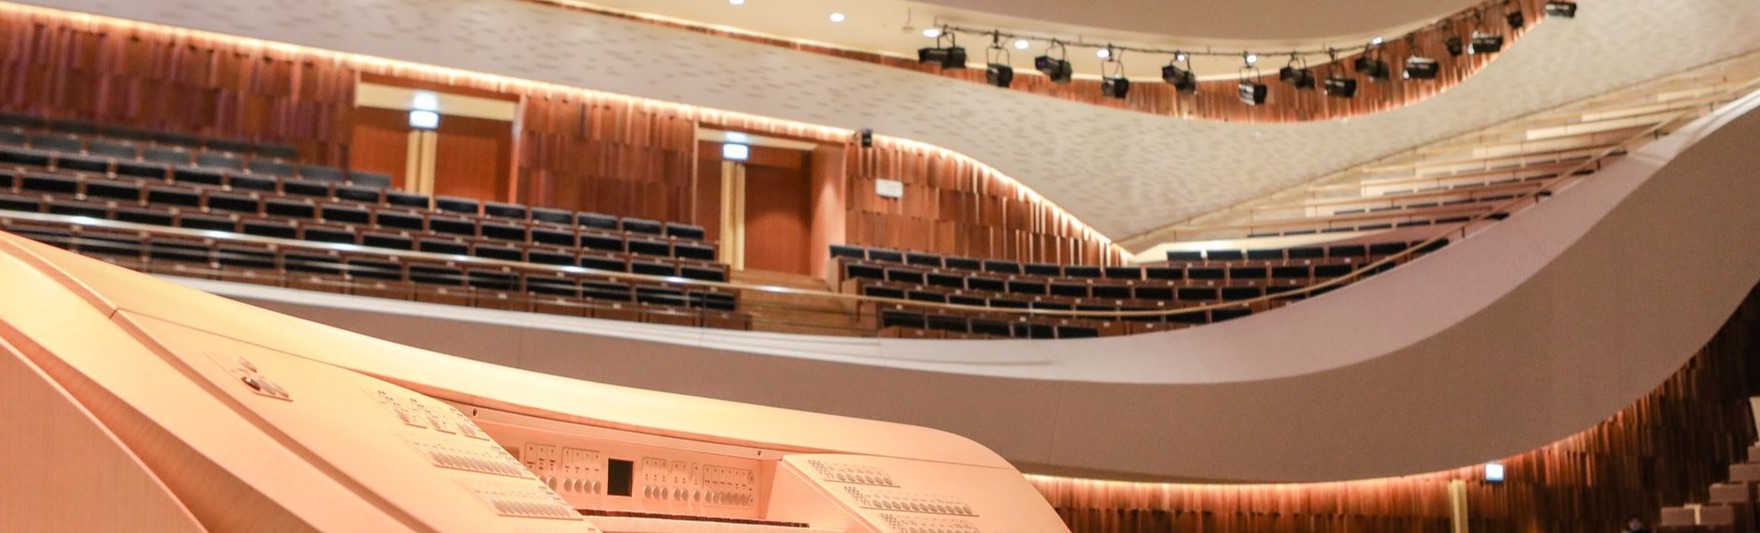 Инаугурация концертного органа